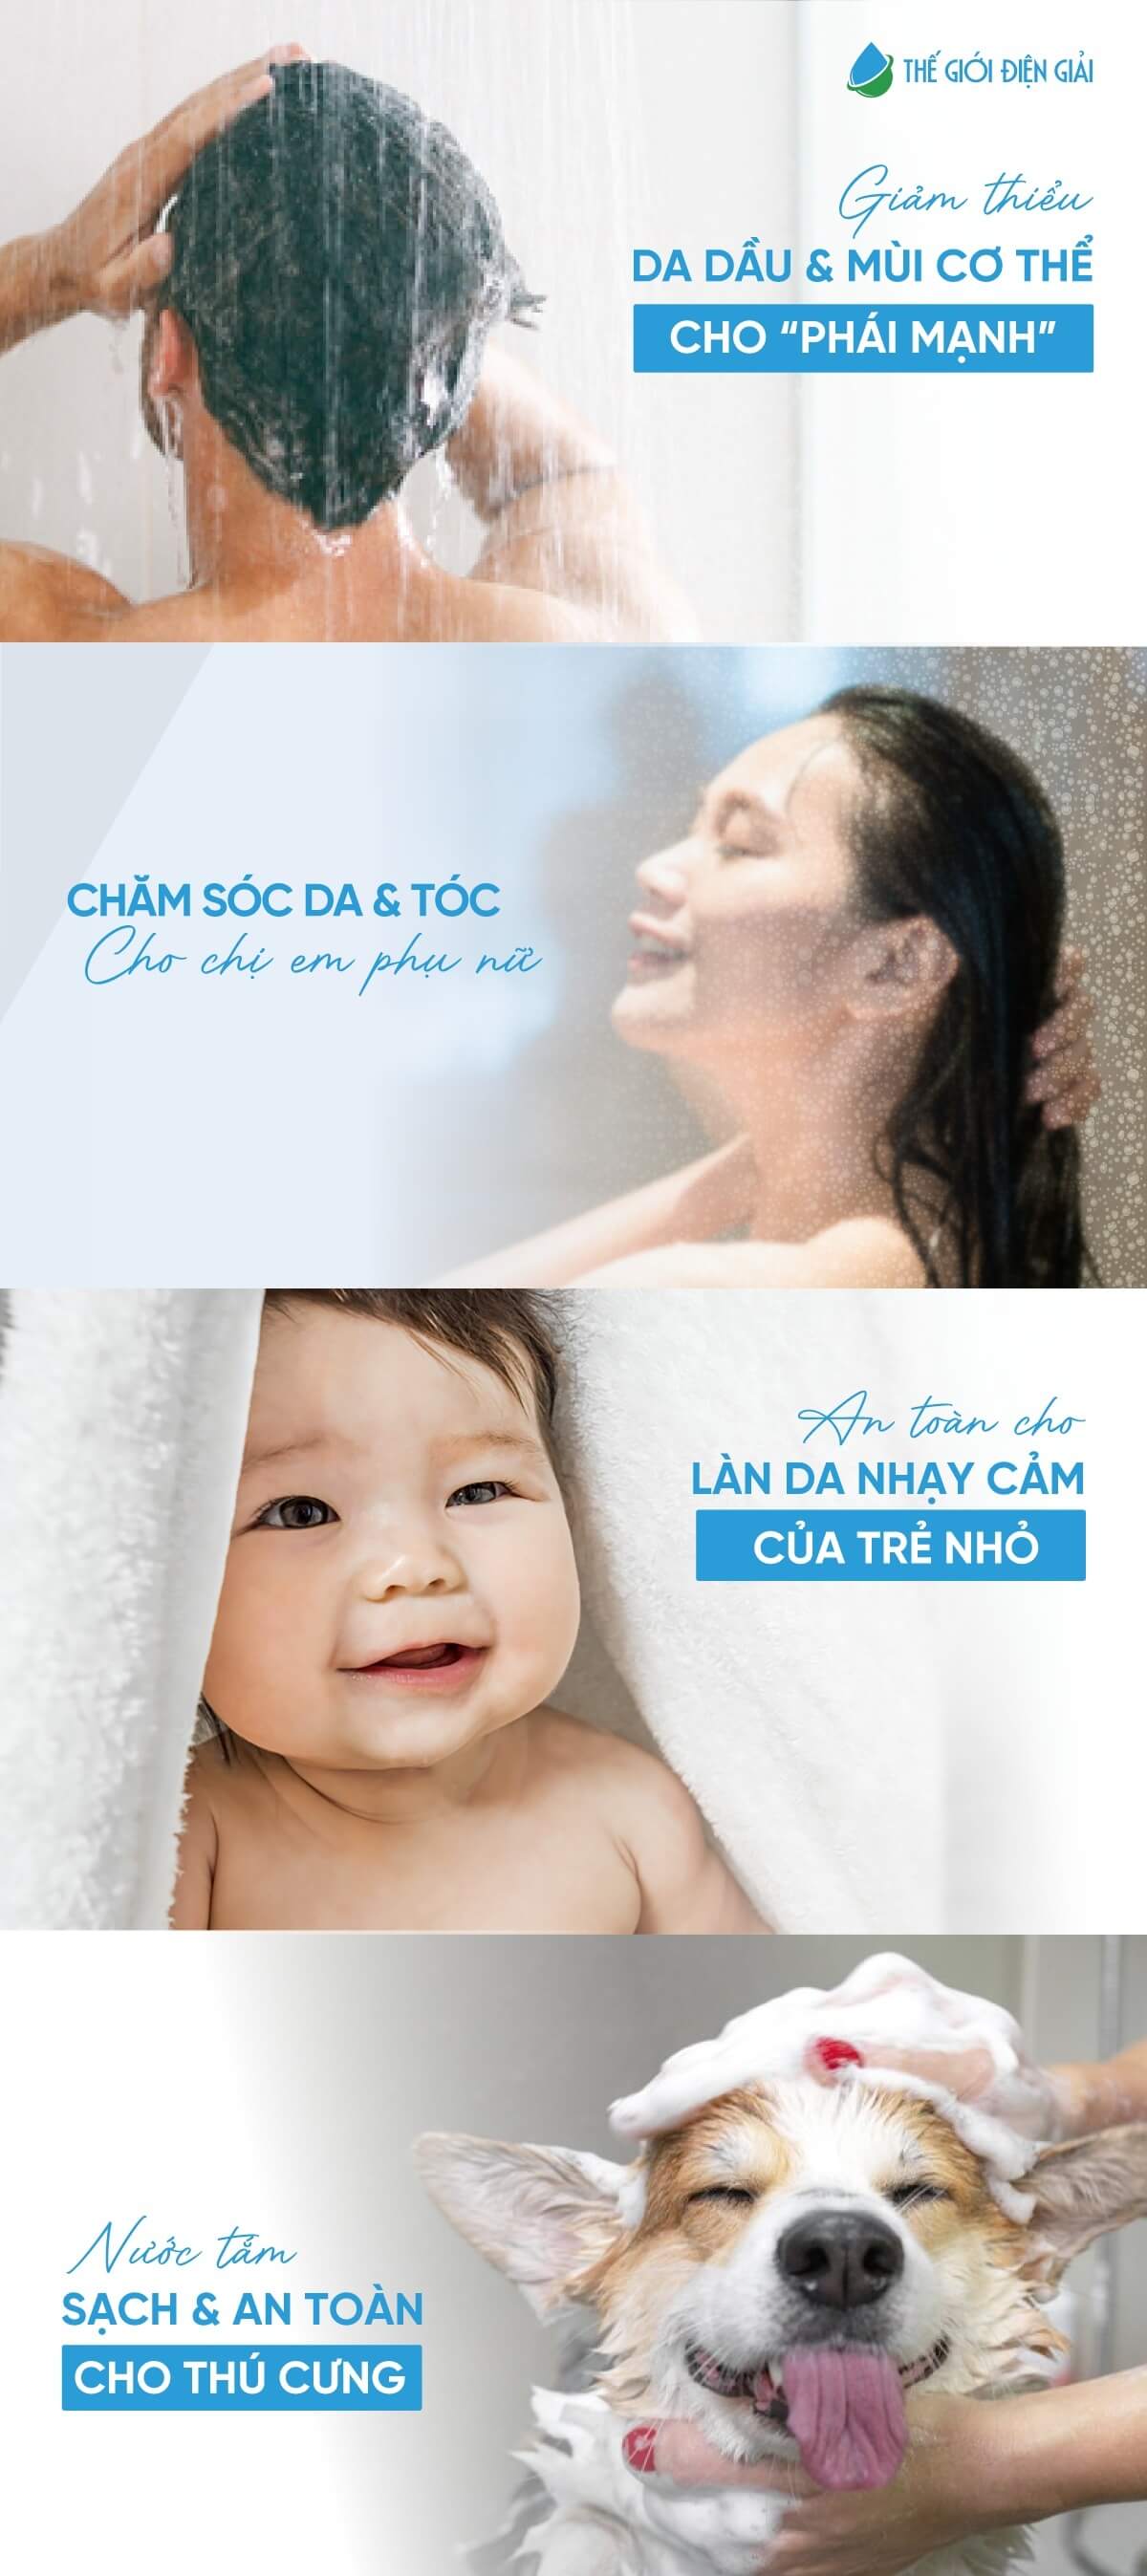 Máy tắm khoáng Fuji Smart Onsen JP Pro có nên sử dụng cho em bé không?